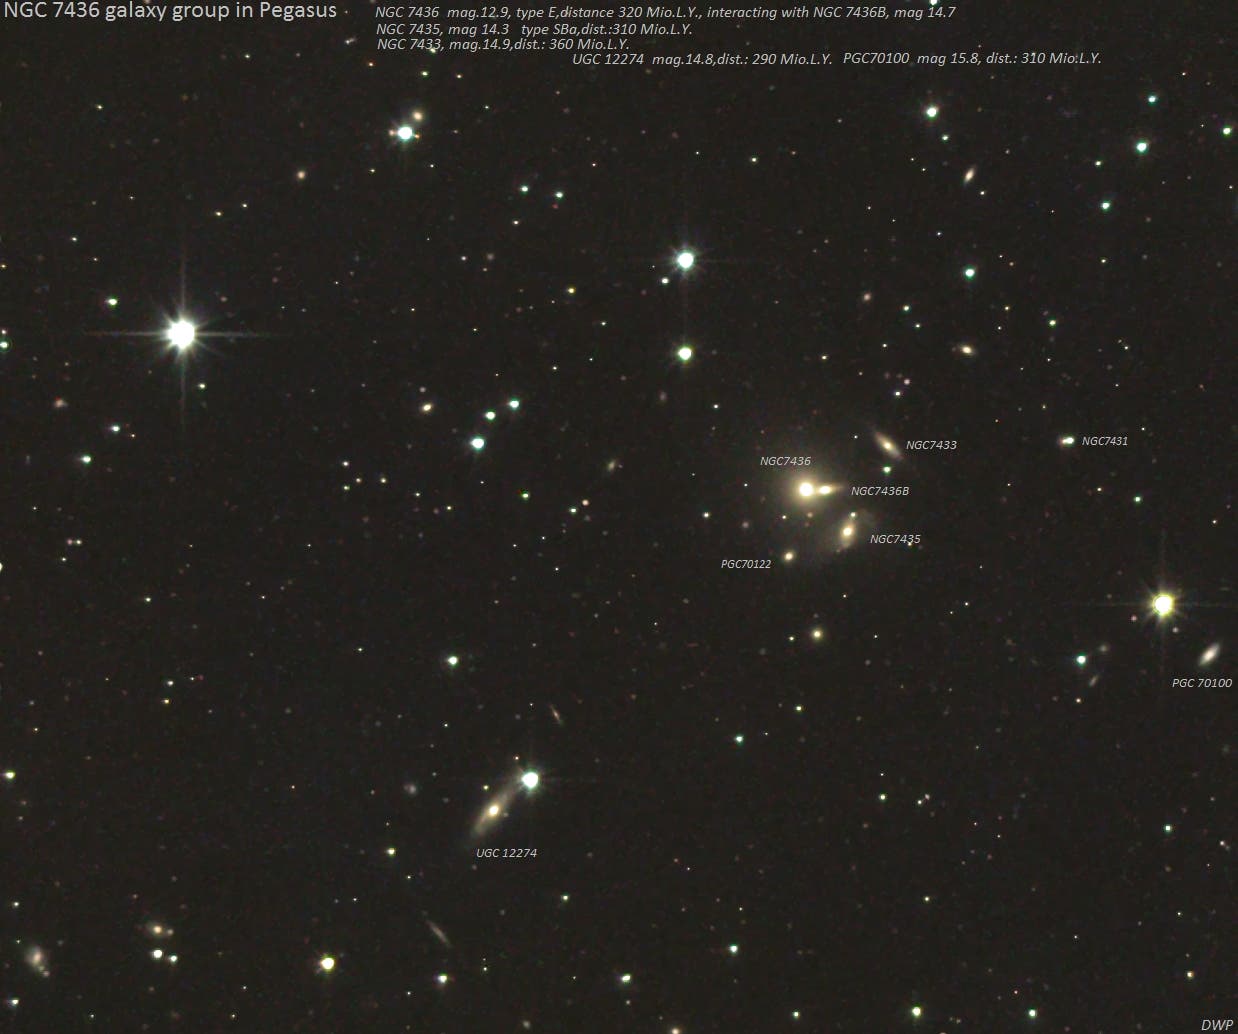 Die kleine Galaxiengruppe NGC7436 et al. im Pegasus (2) Objekte